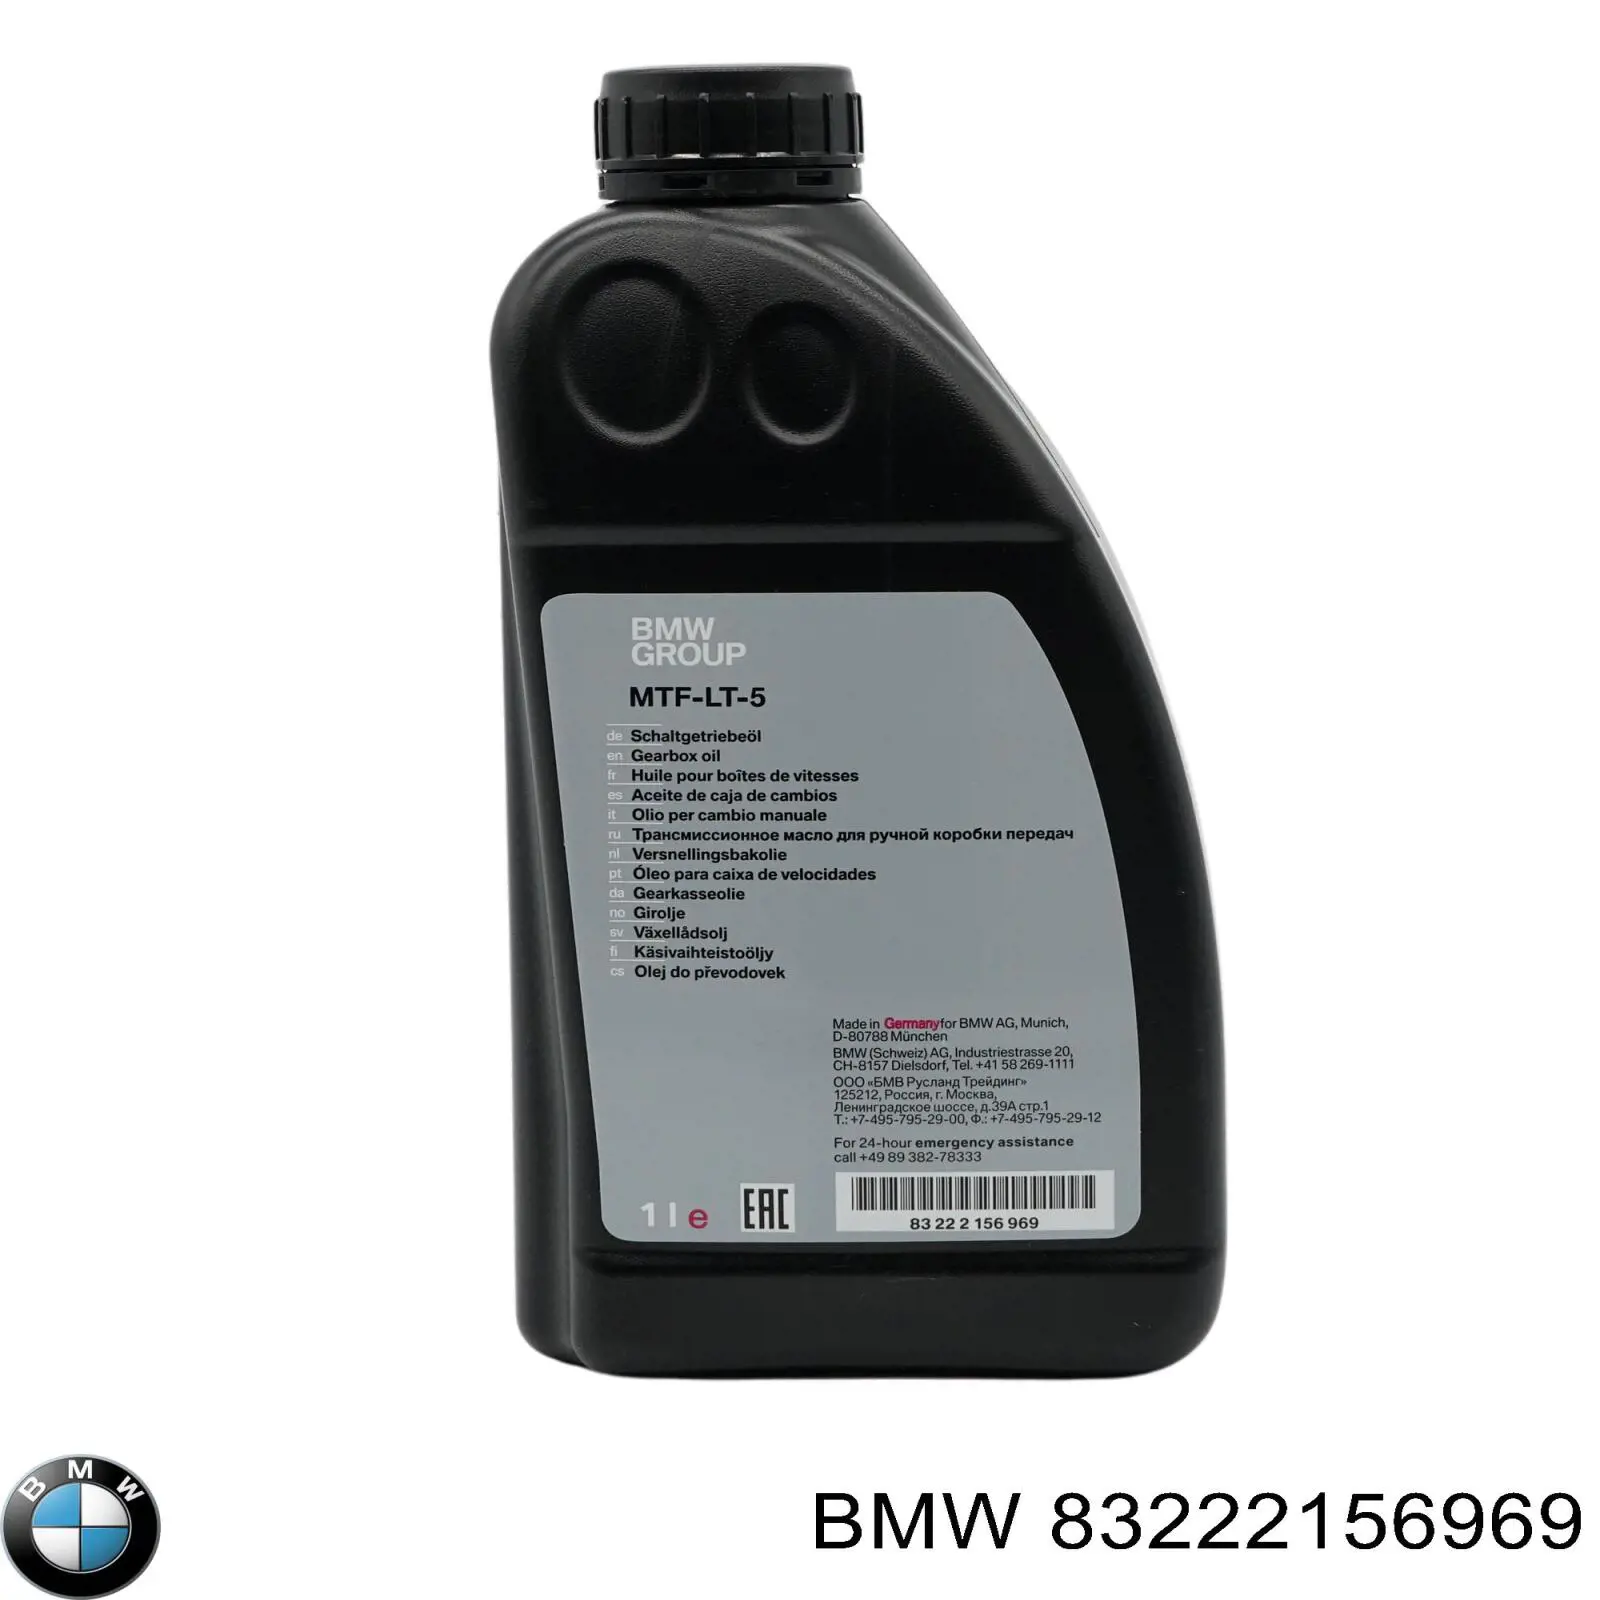  Масло трансмиссионное BMW MTF LT-5 1 л (83222156969)